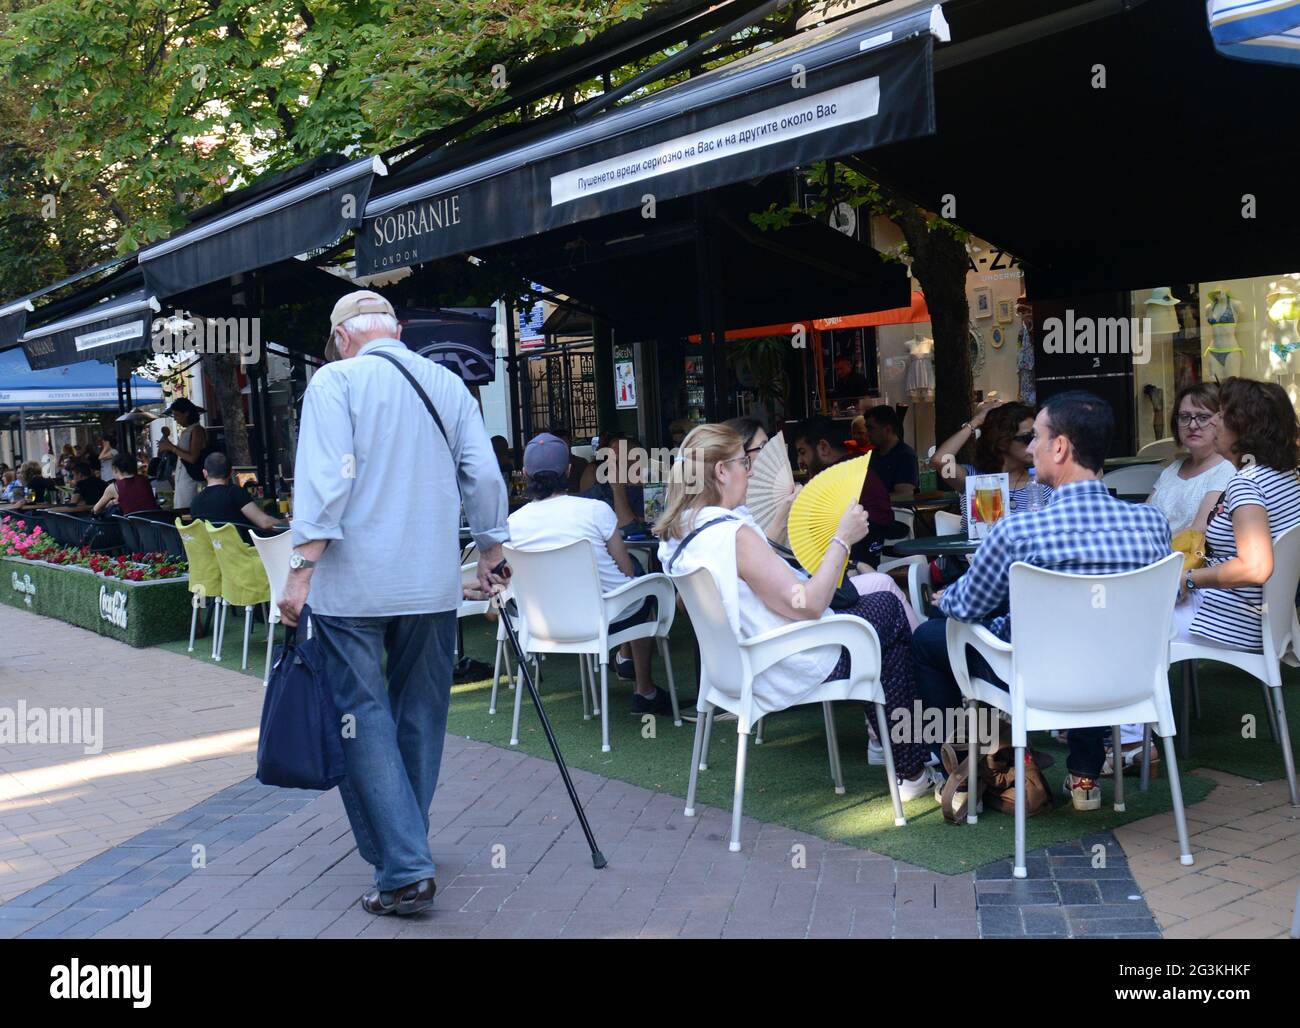 Vitosha Boulevard est une rue piétonne animée avec de nombreux restaurants, cafés et boutiques. Sofia, Bulgarie. Banque D'Images